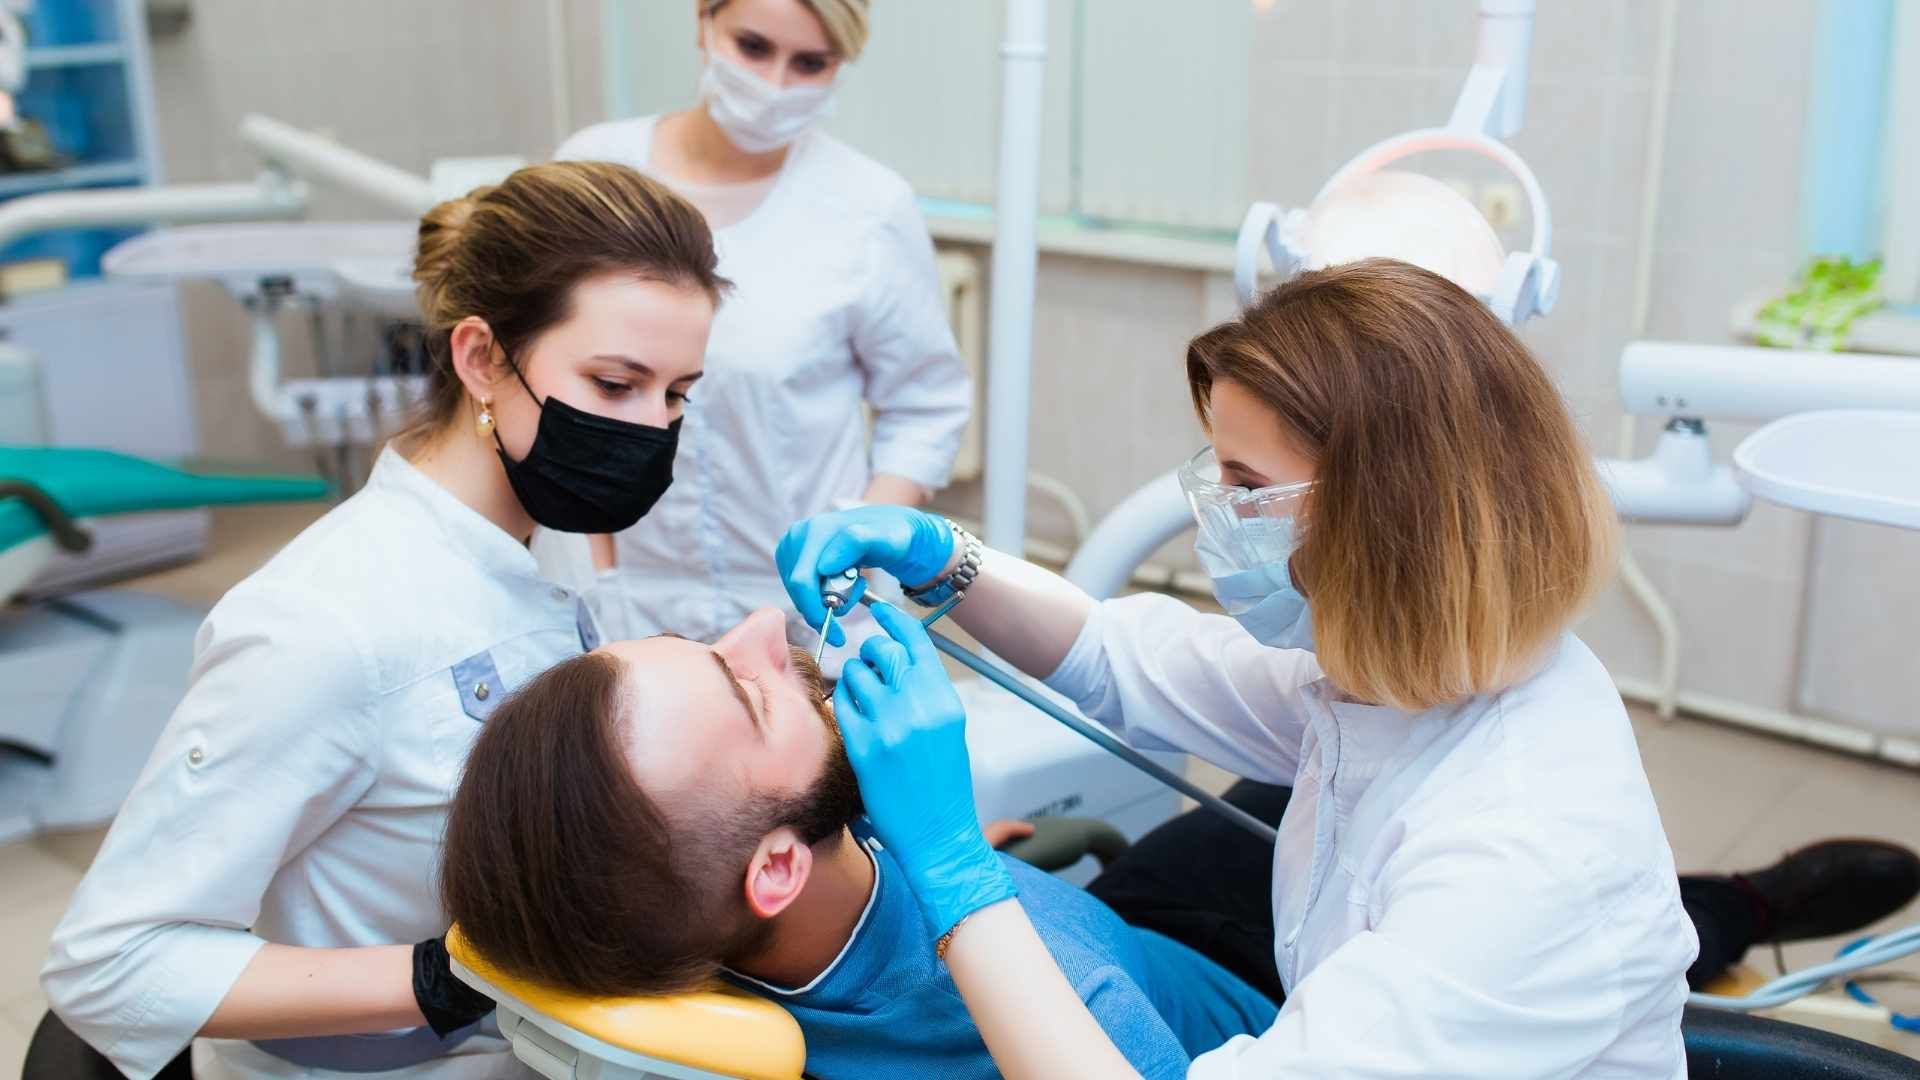 پرکردن دندان یک سطحی با کامپوزیت آمریکایی دکتر کاملیا علیجانی در تهران 1